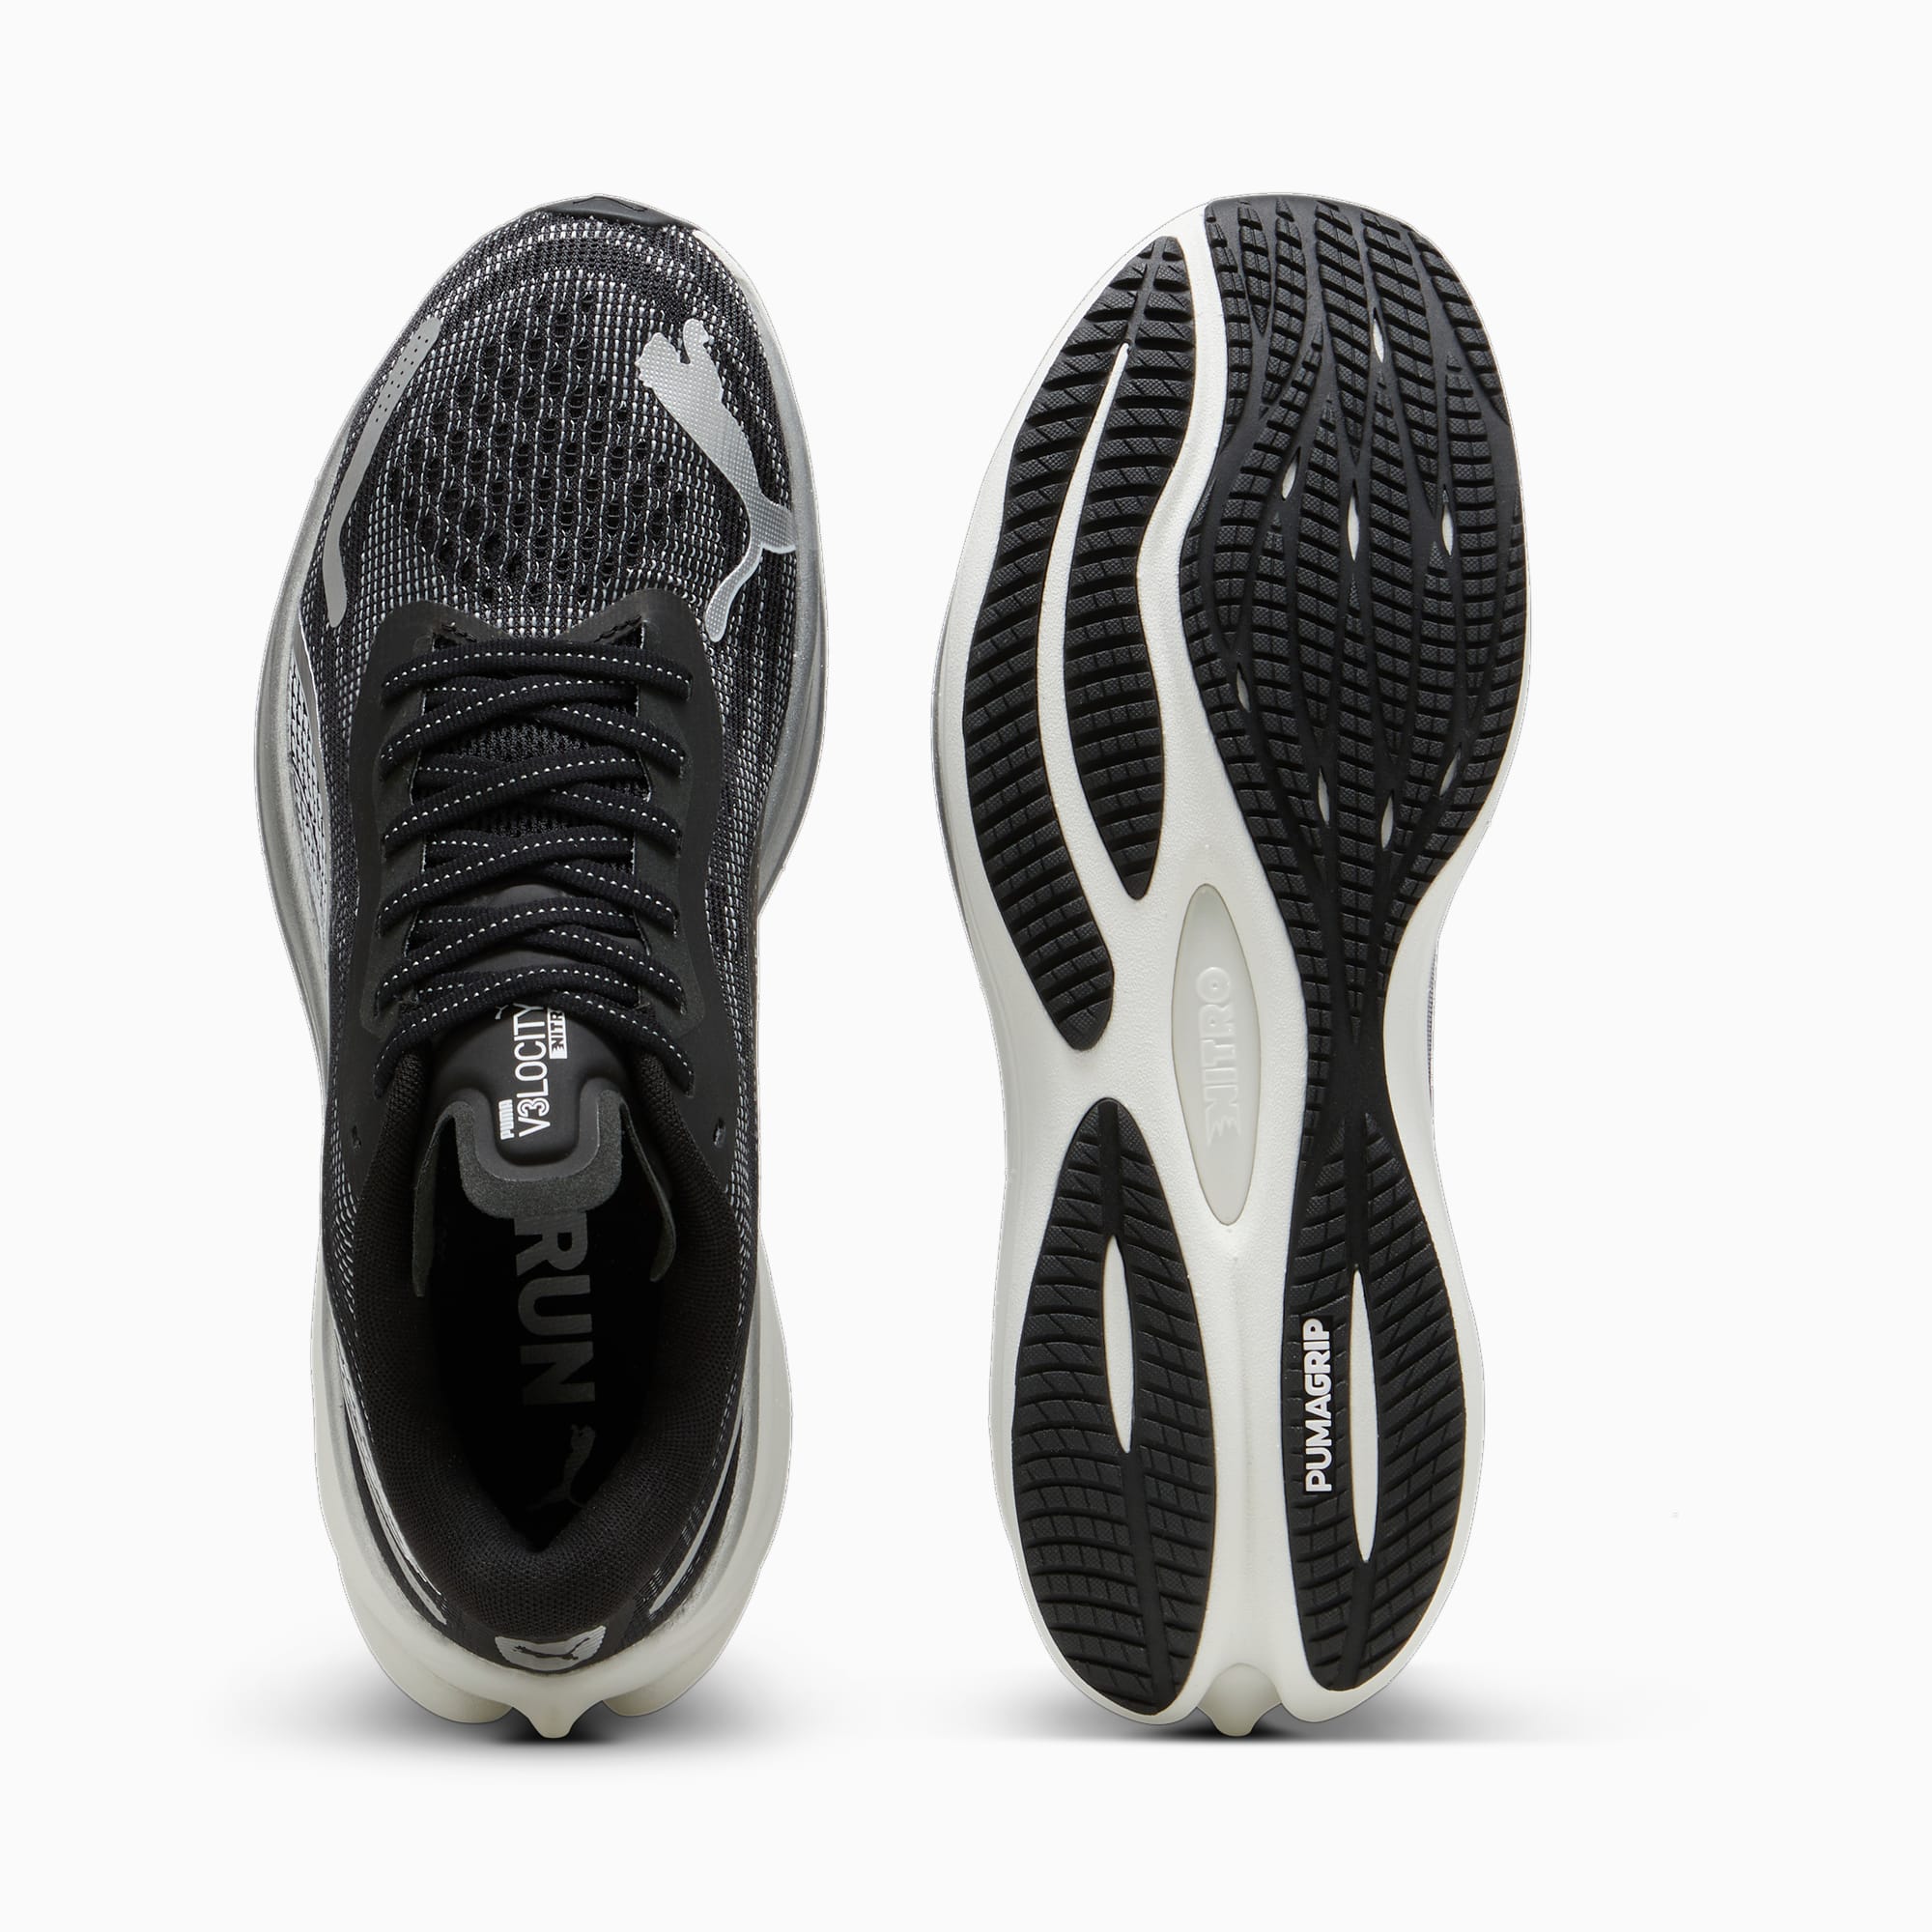 PUMA Chaussures De Running Velocity NITRO™ 3 Pour Homme, Noir/Blanc/Argent